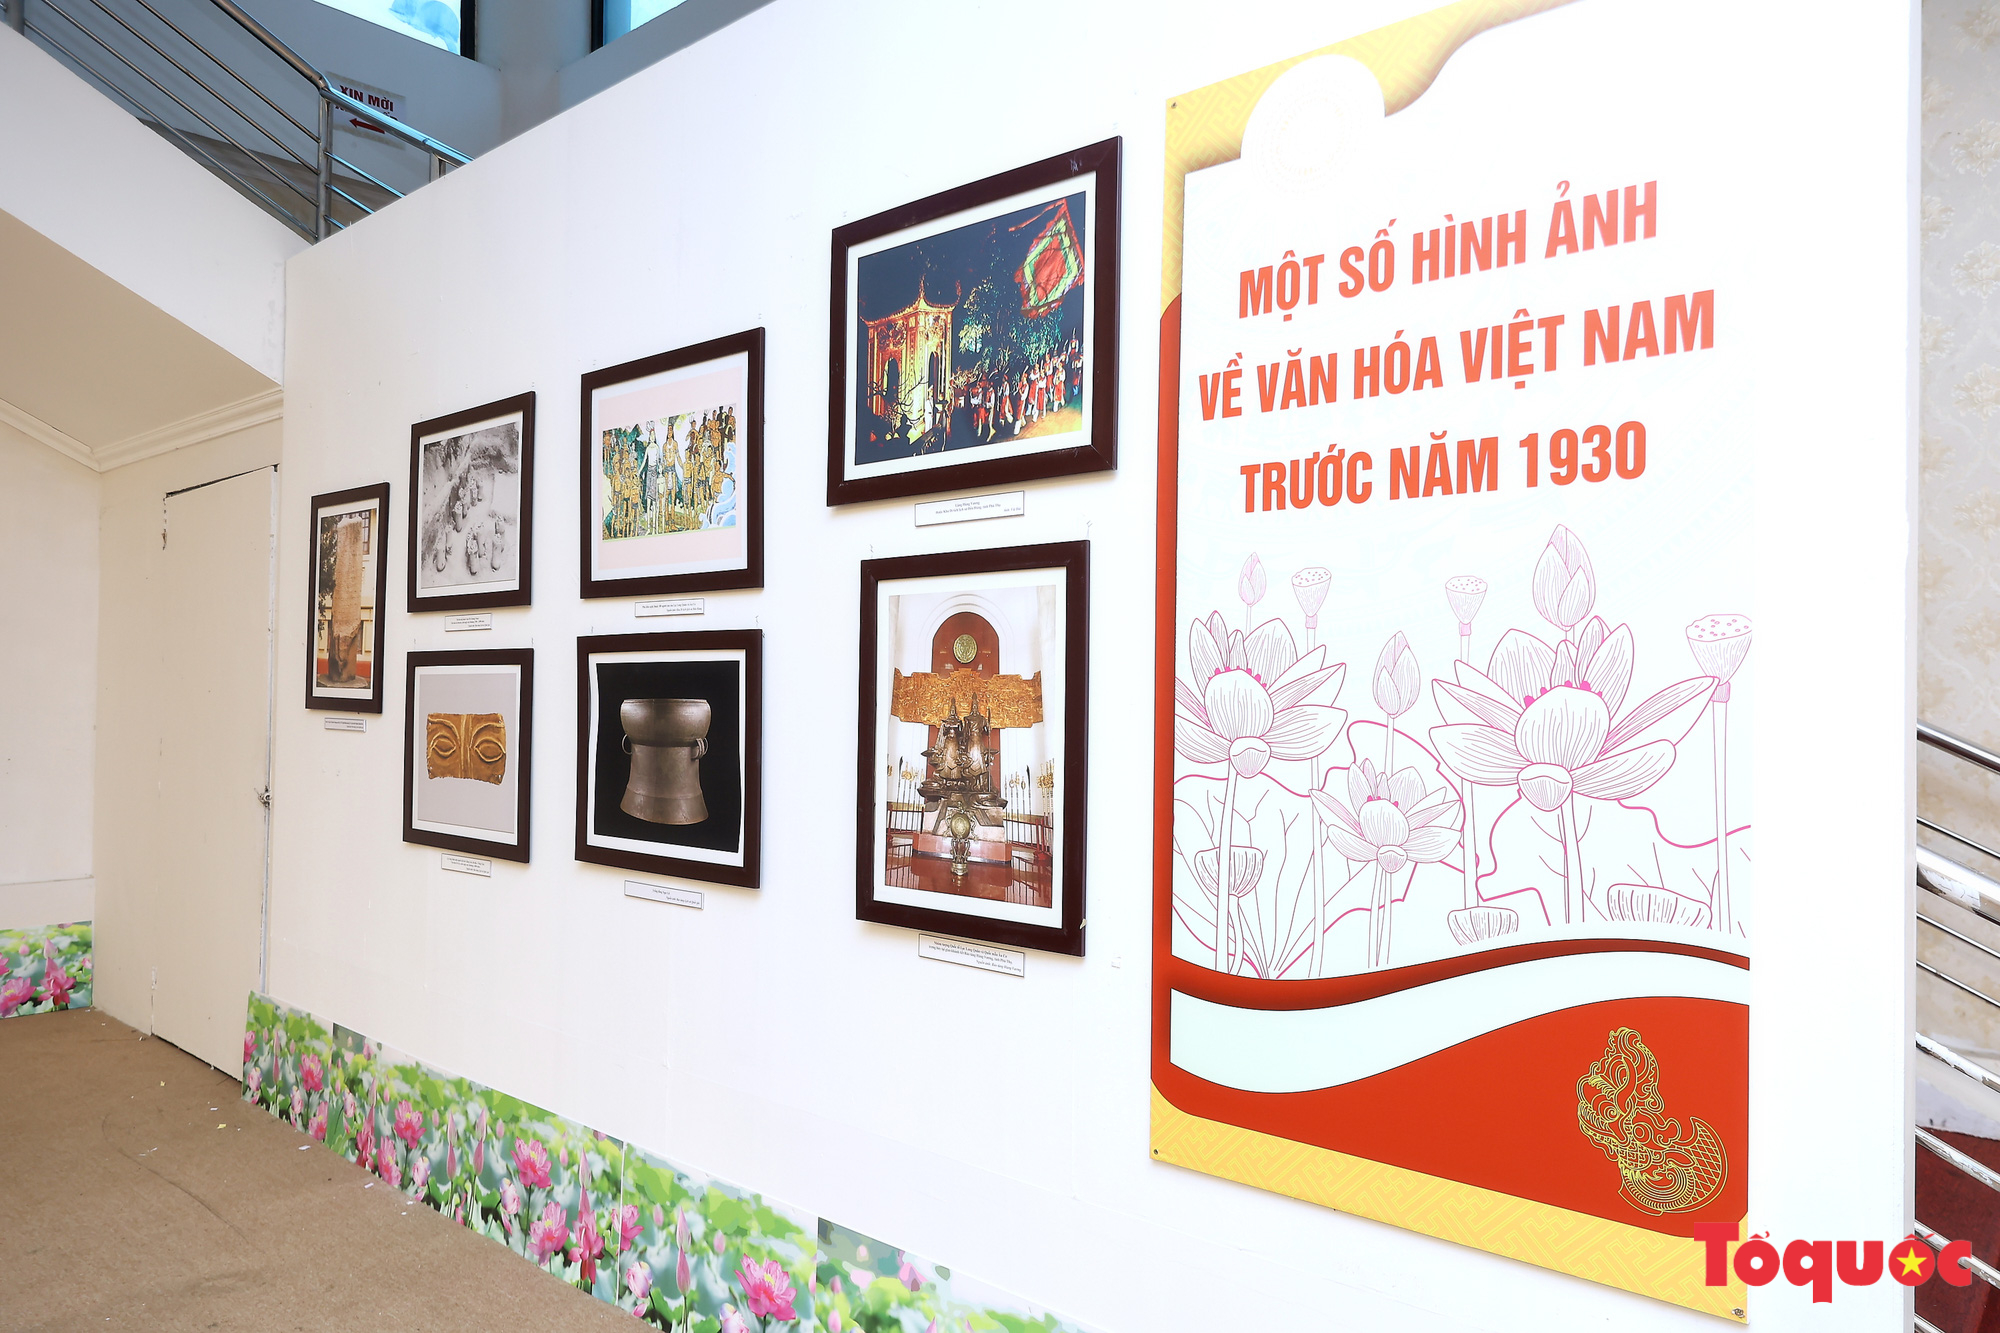 Triển lãm &quot;Văn hóa soi đường cho quốc dân đi&quot;: Trưng bày gần 500 hình ảnh, hiện vật quý về văn hóa Việt Nam - Ảnh 5.